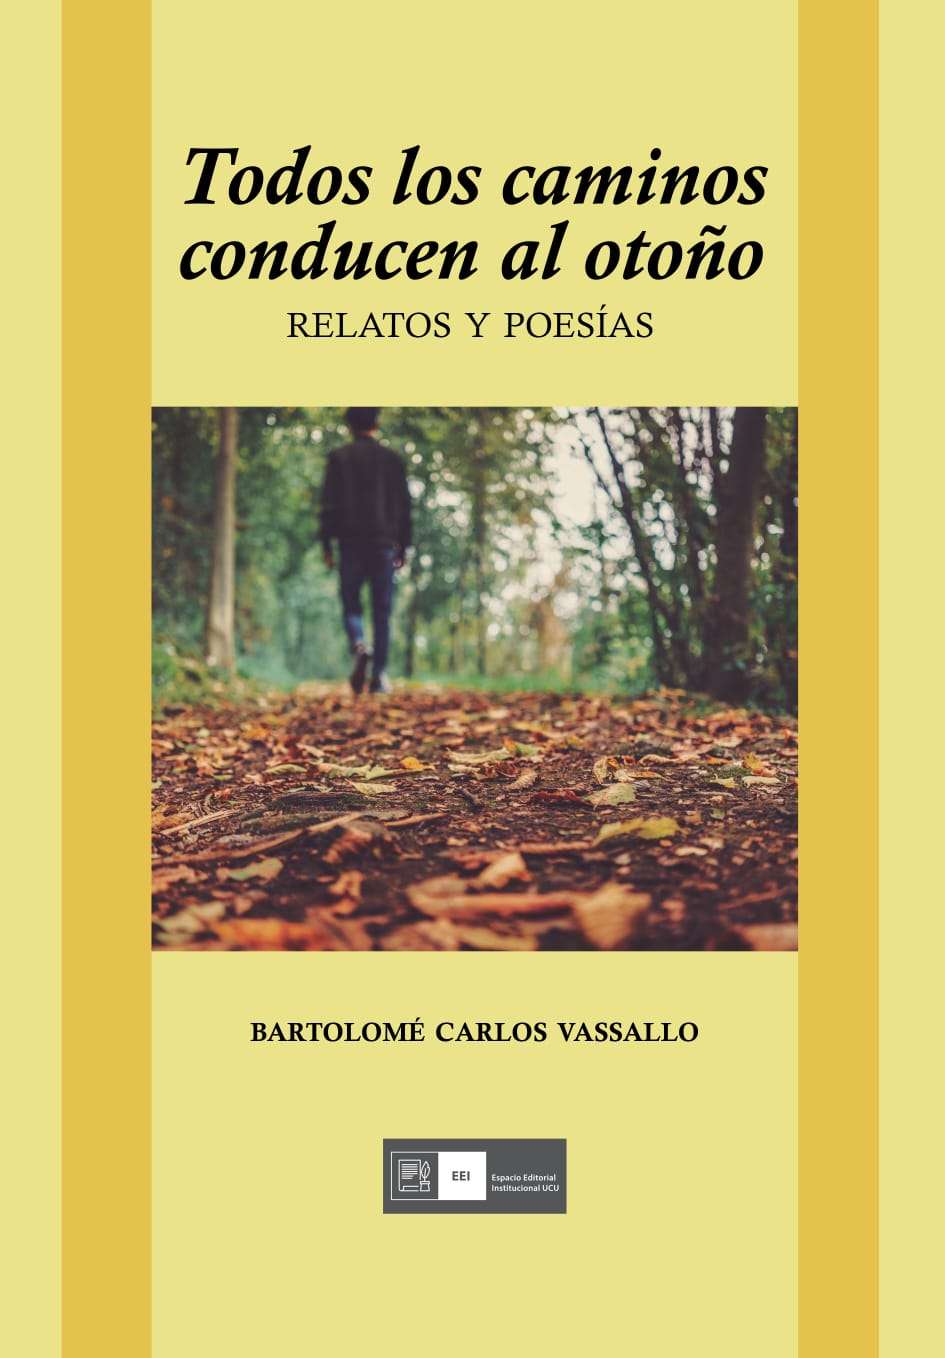 Presentación del libro “Todos los caminos conducen al otoño”
del  Dr. Bartolomé Carlos Vasallo